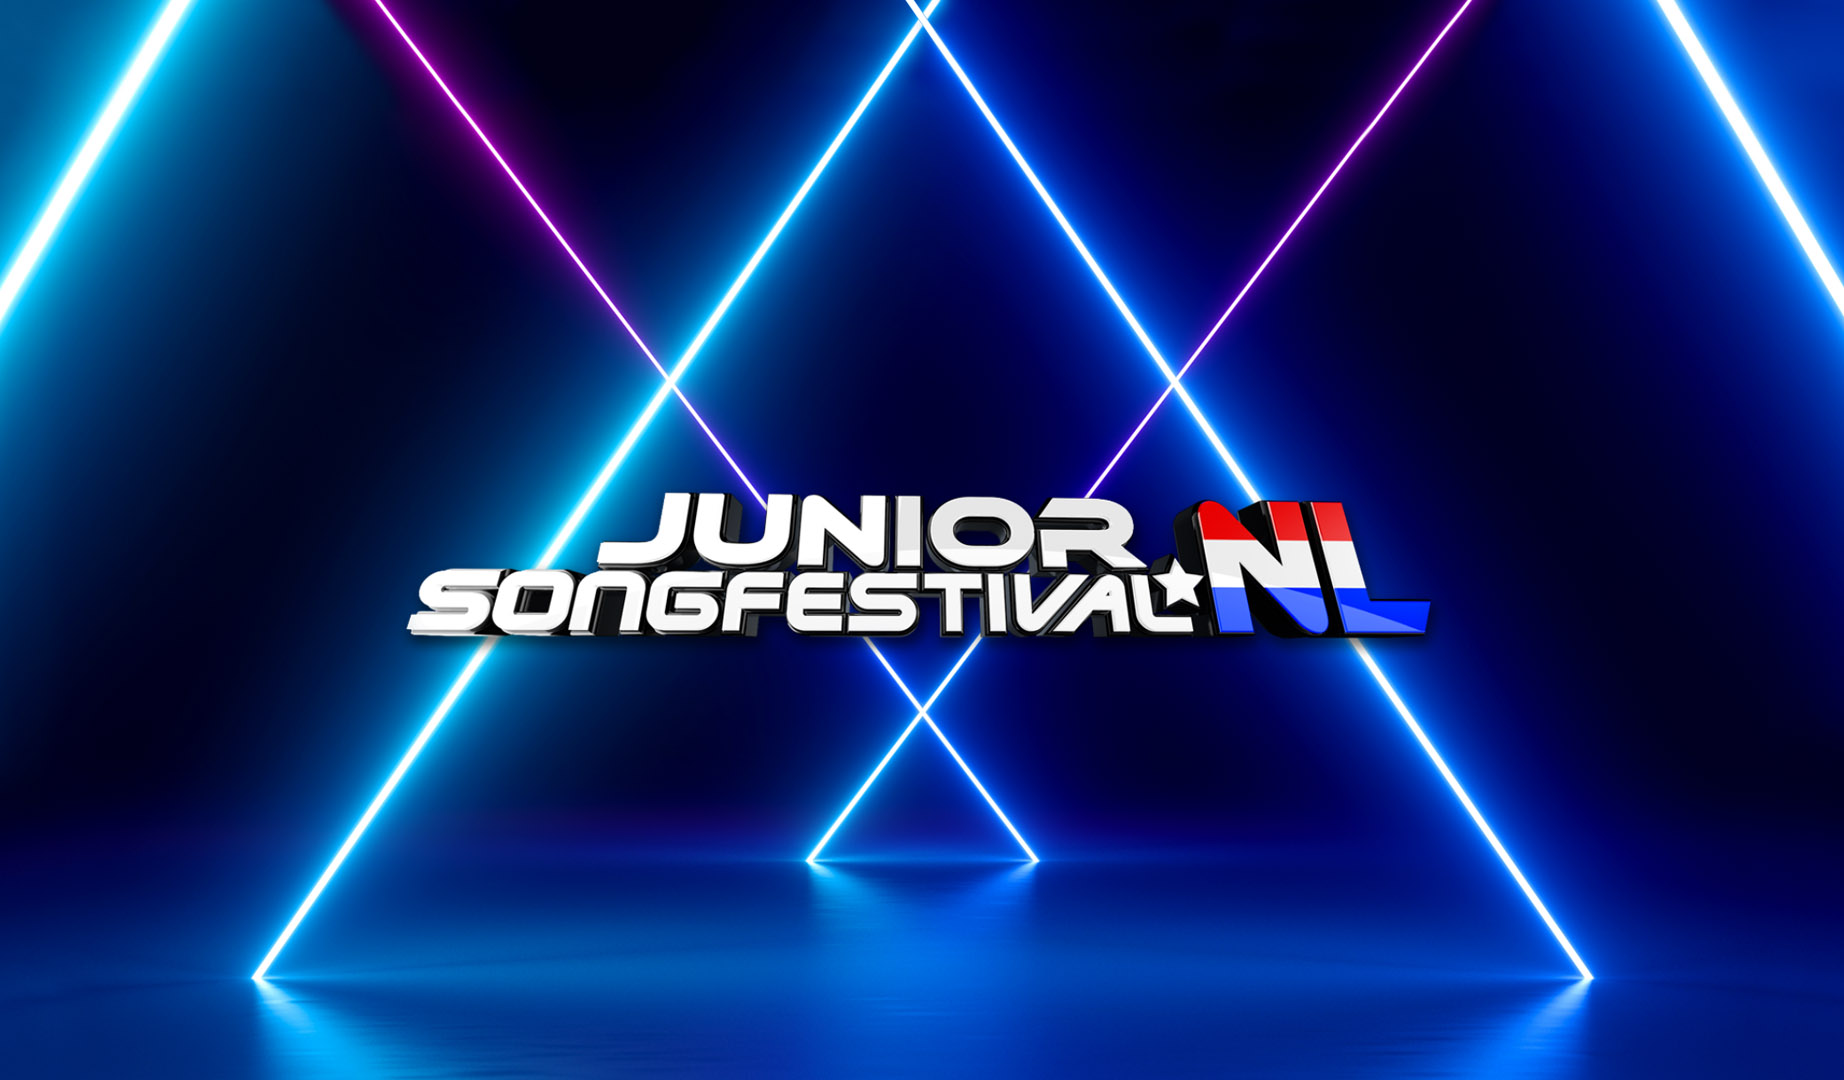 Países Bajos anuncia a los participantes de las audiciones del Junior Songfestival 2022